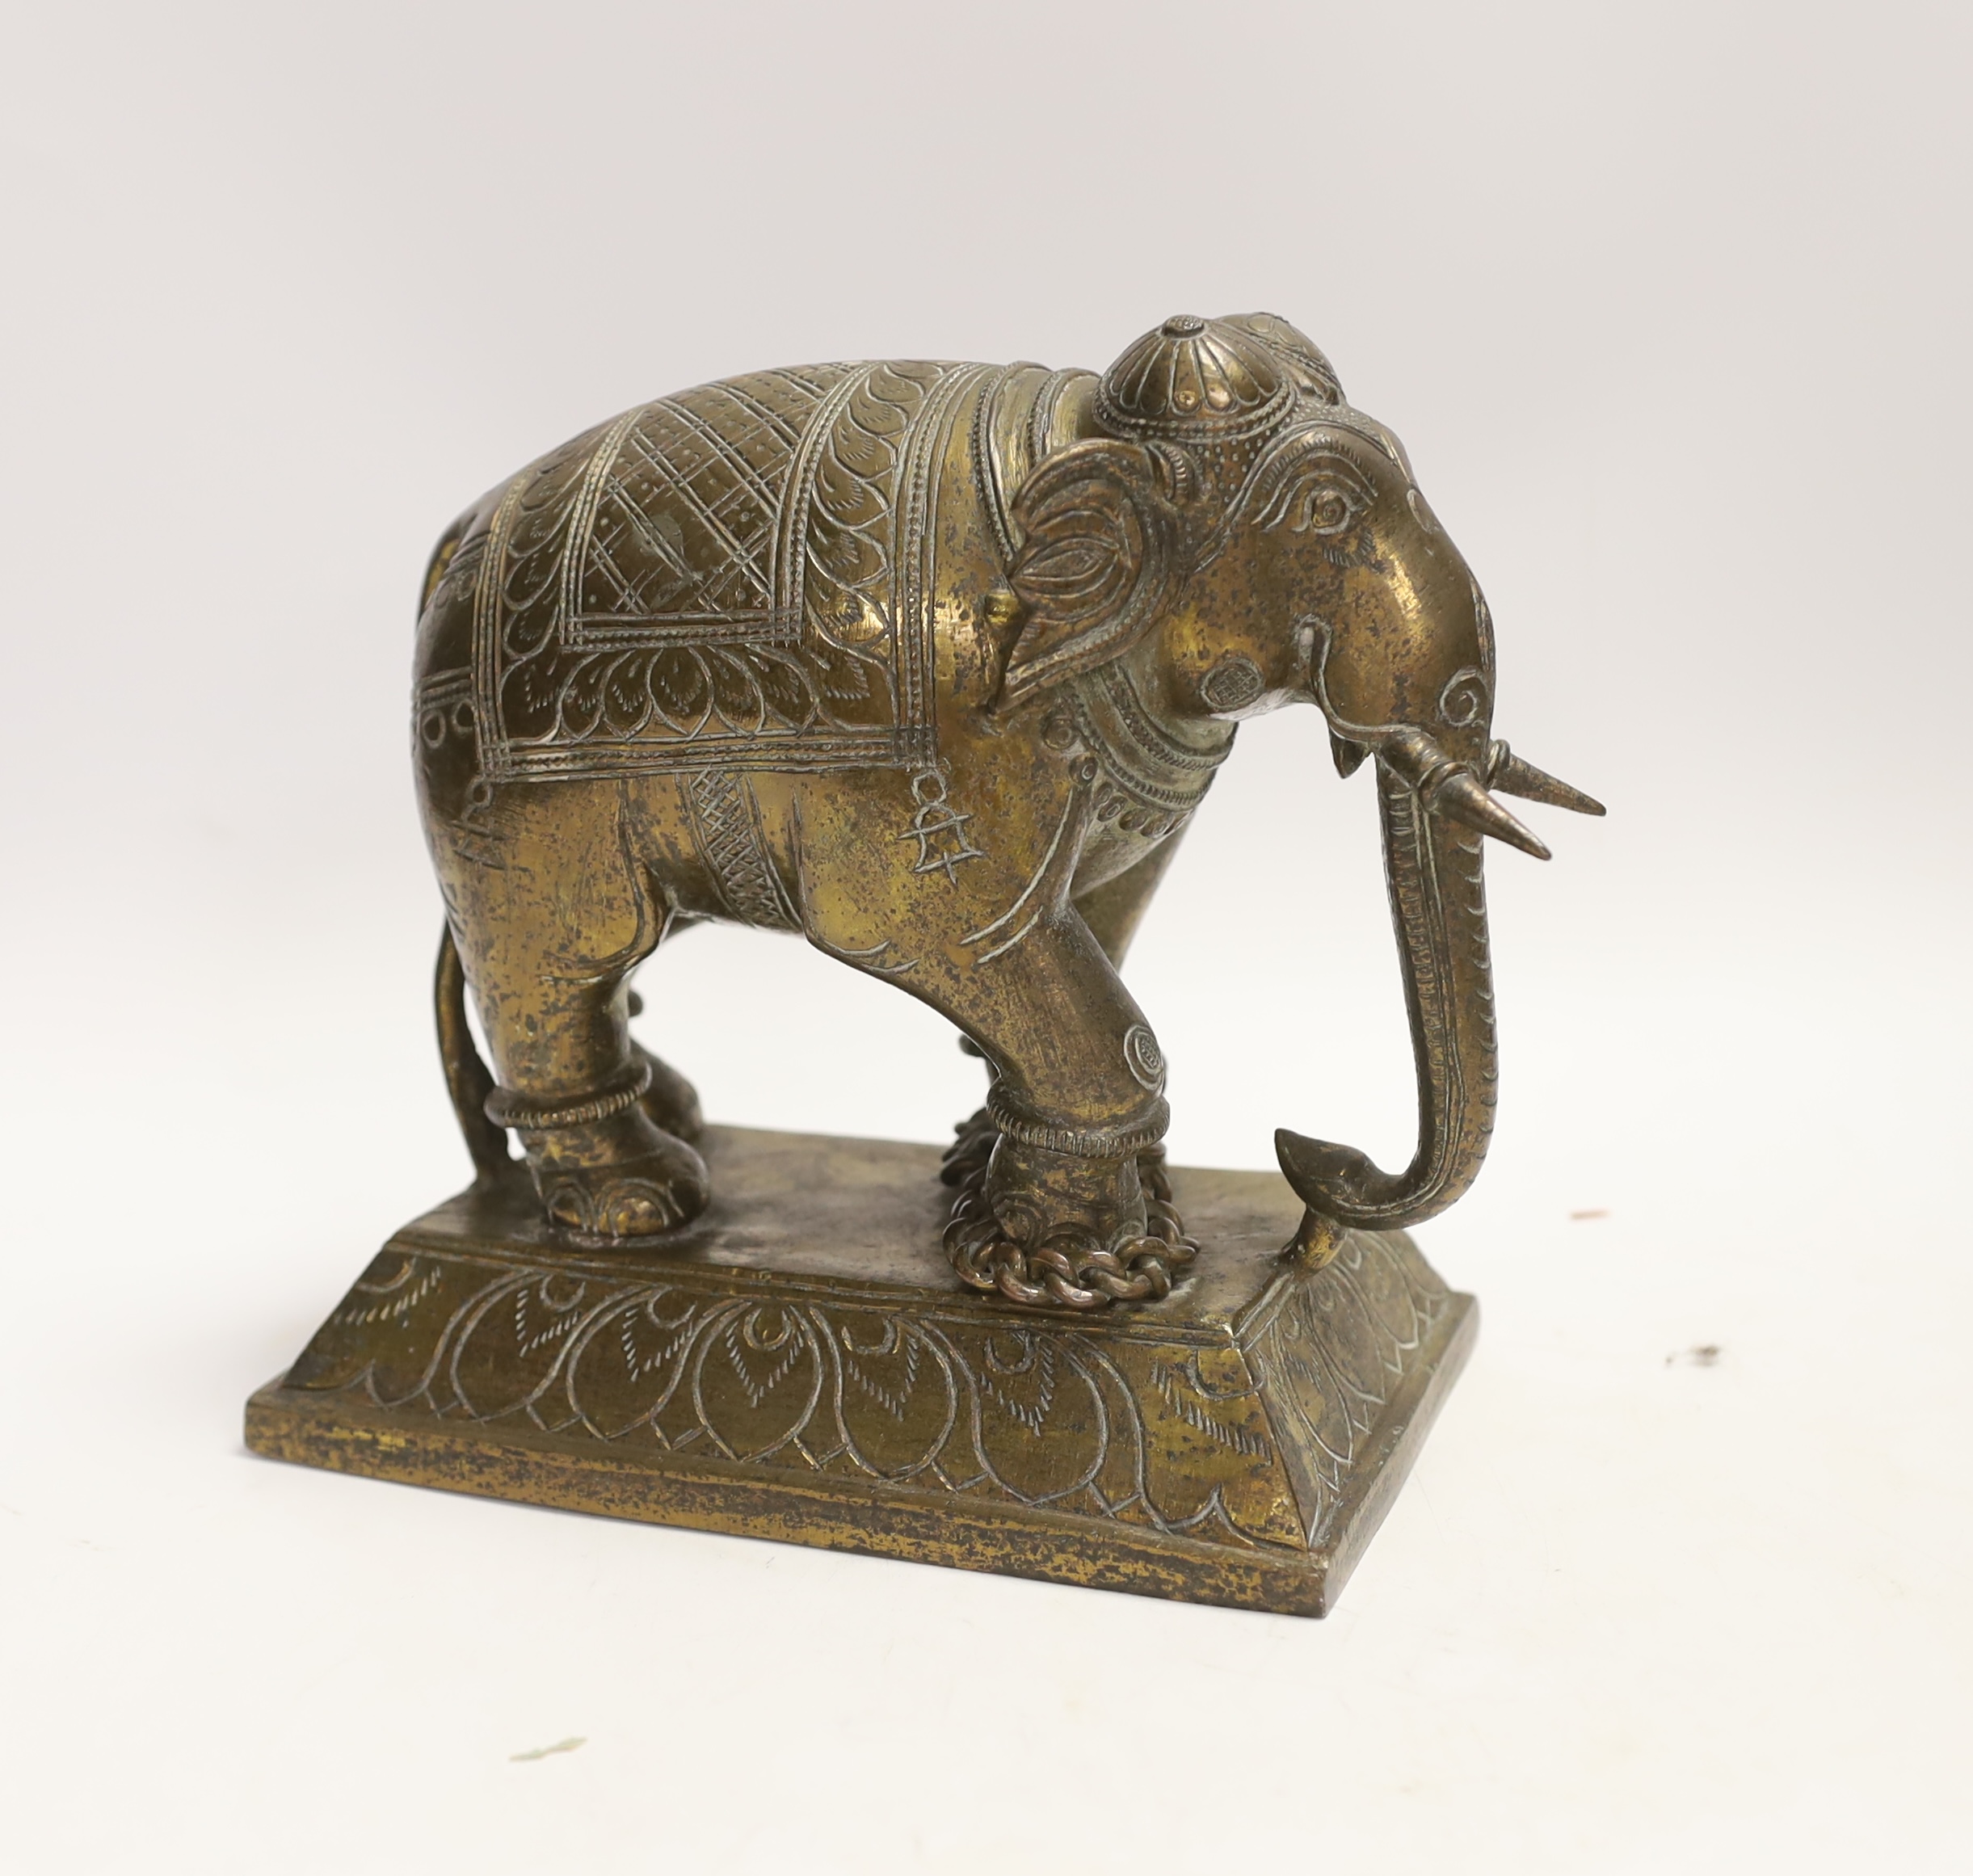 An Indian bronze model of an elephant, 18cm high